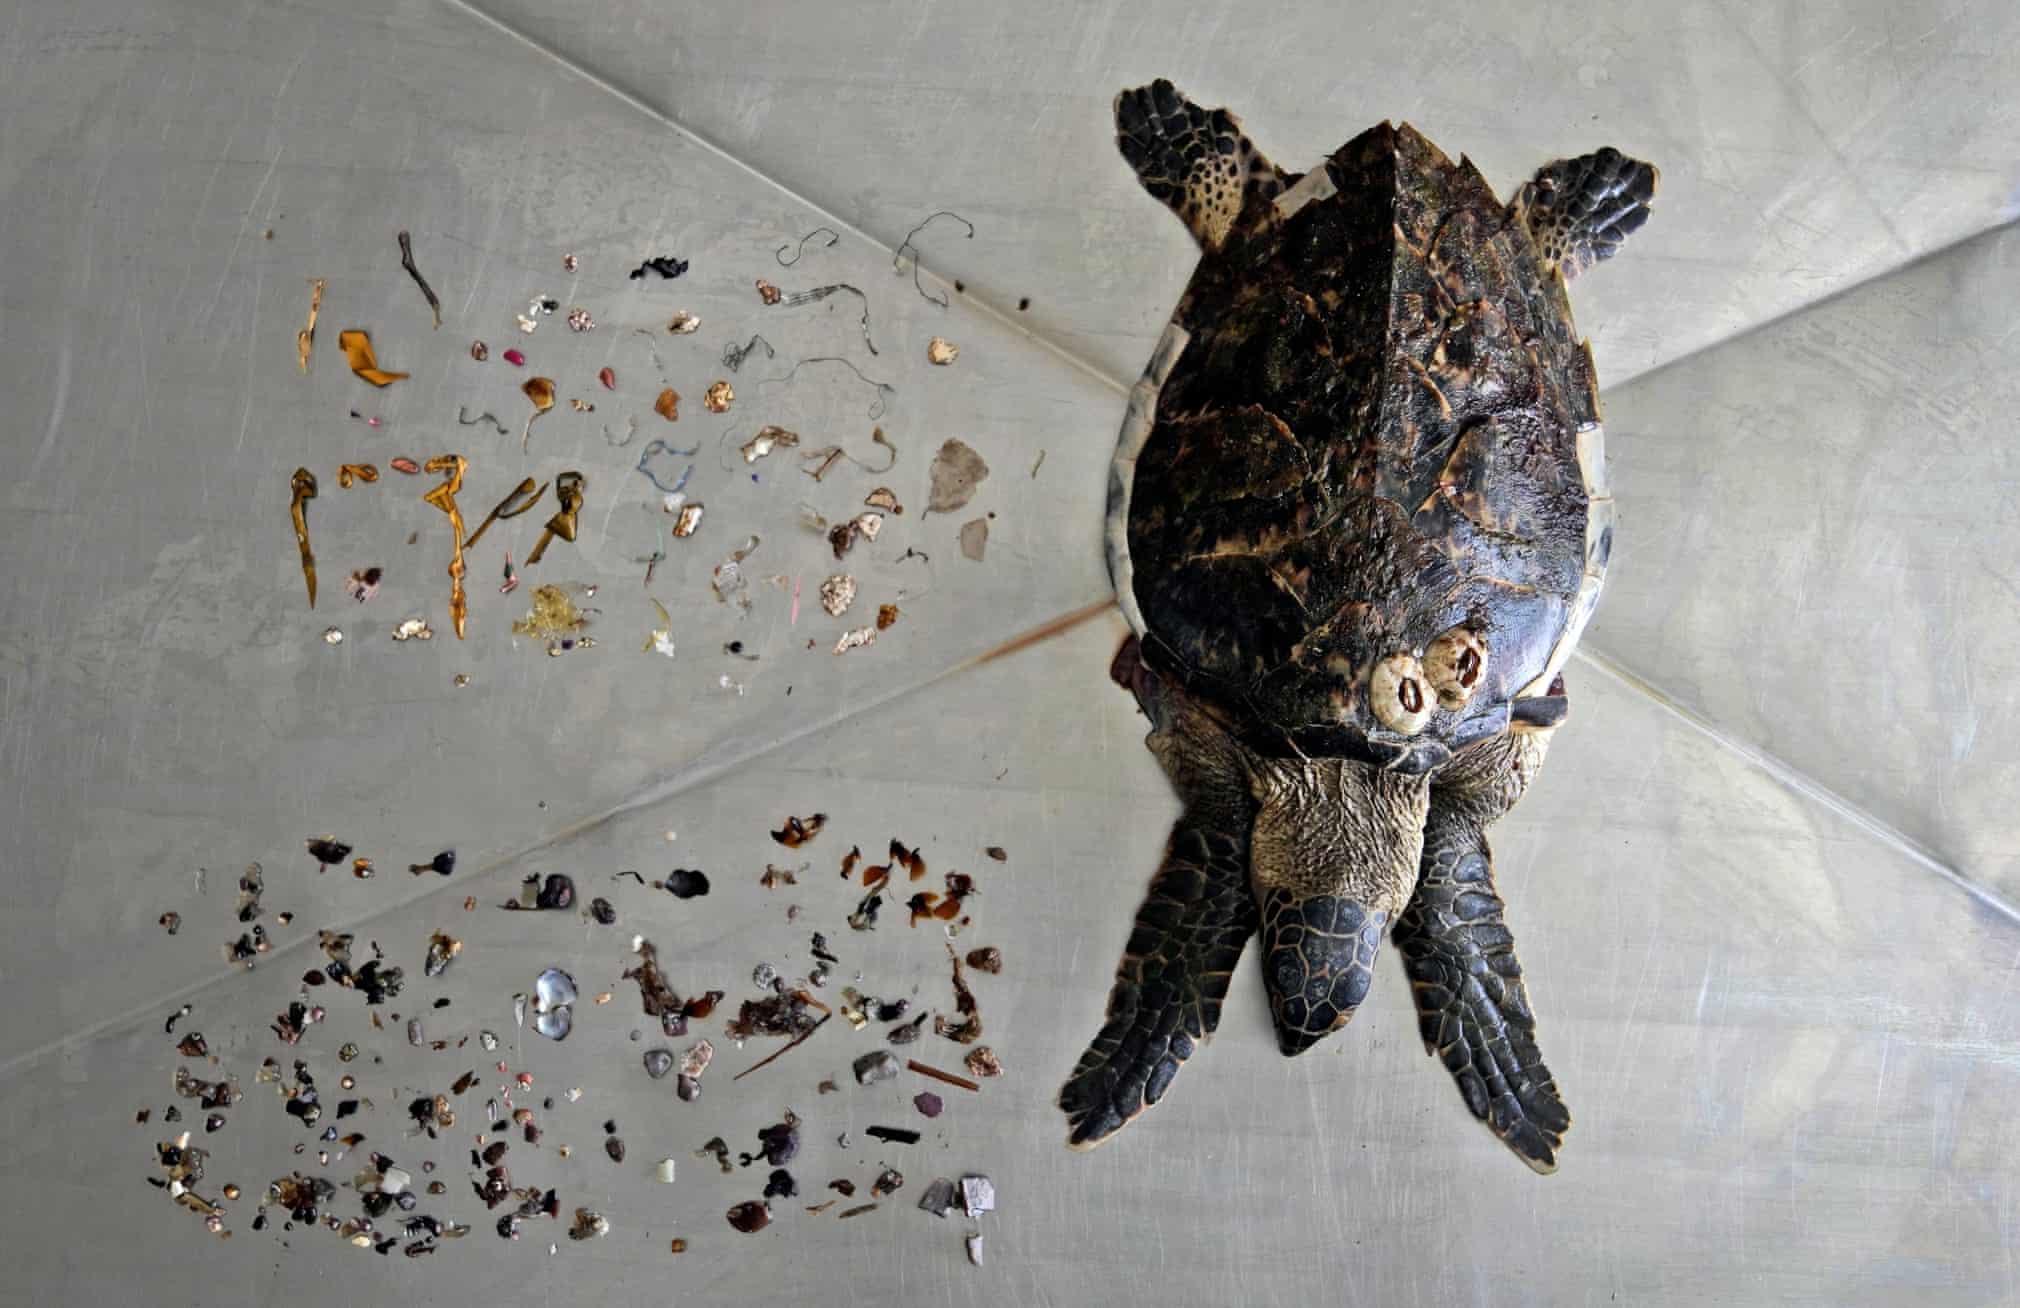 ضایعات پلاستیکی خارج شده از بدن لاکپشت + عکس - تلگرام آپ